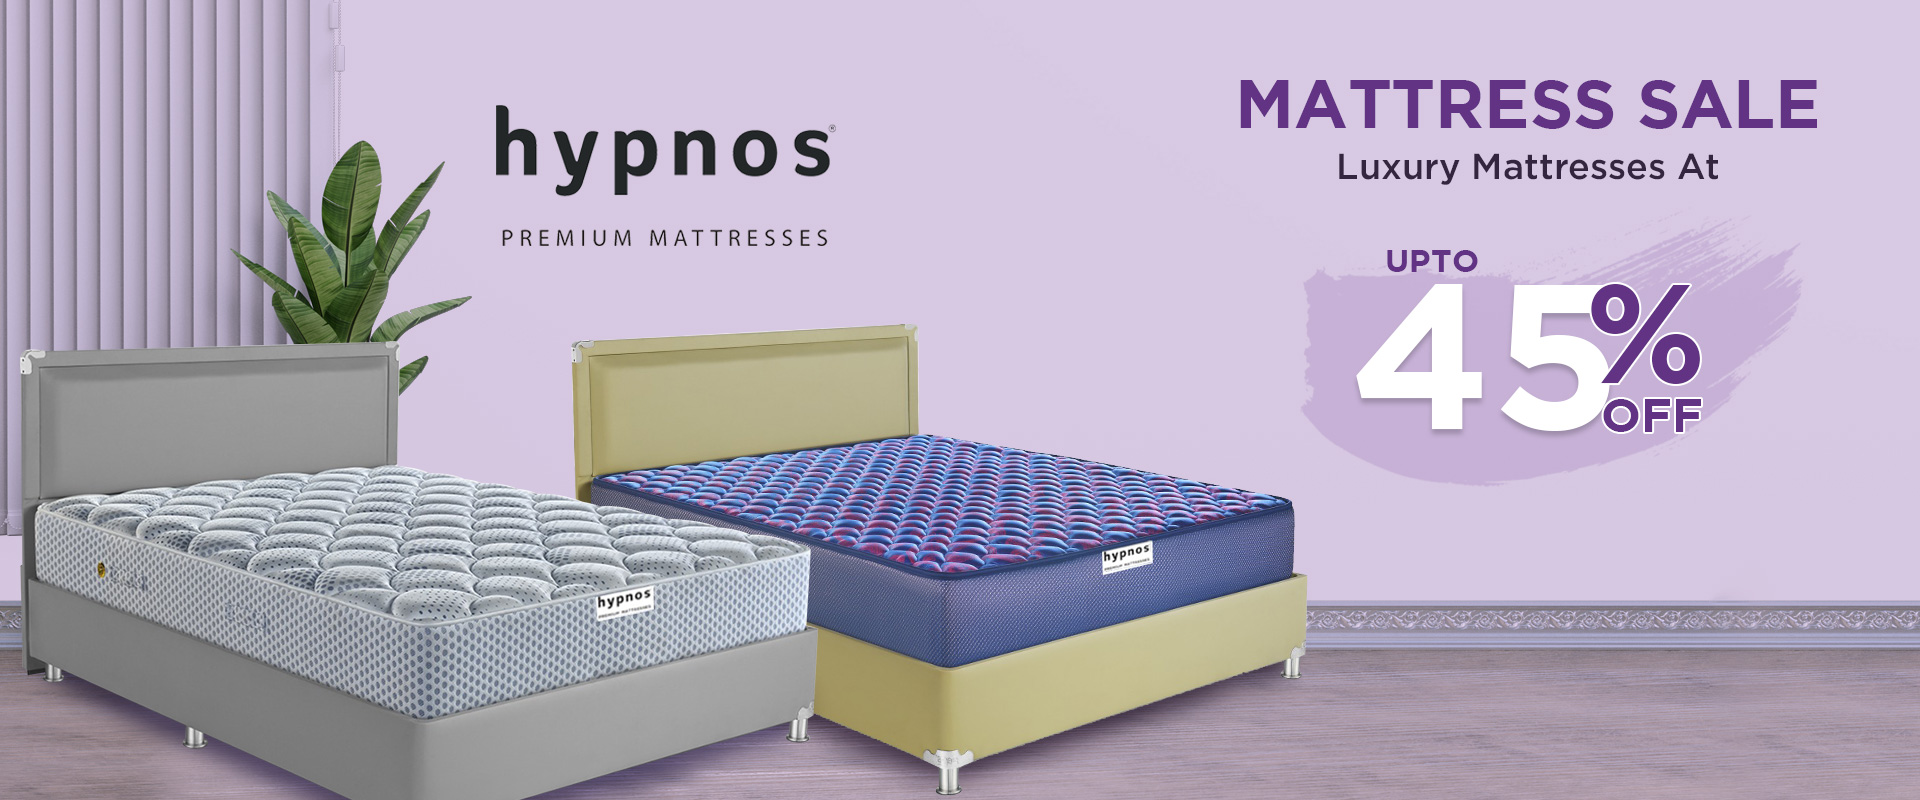 caspio mattress with 45% discount